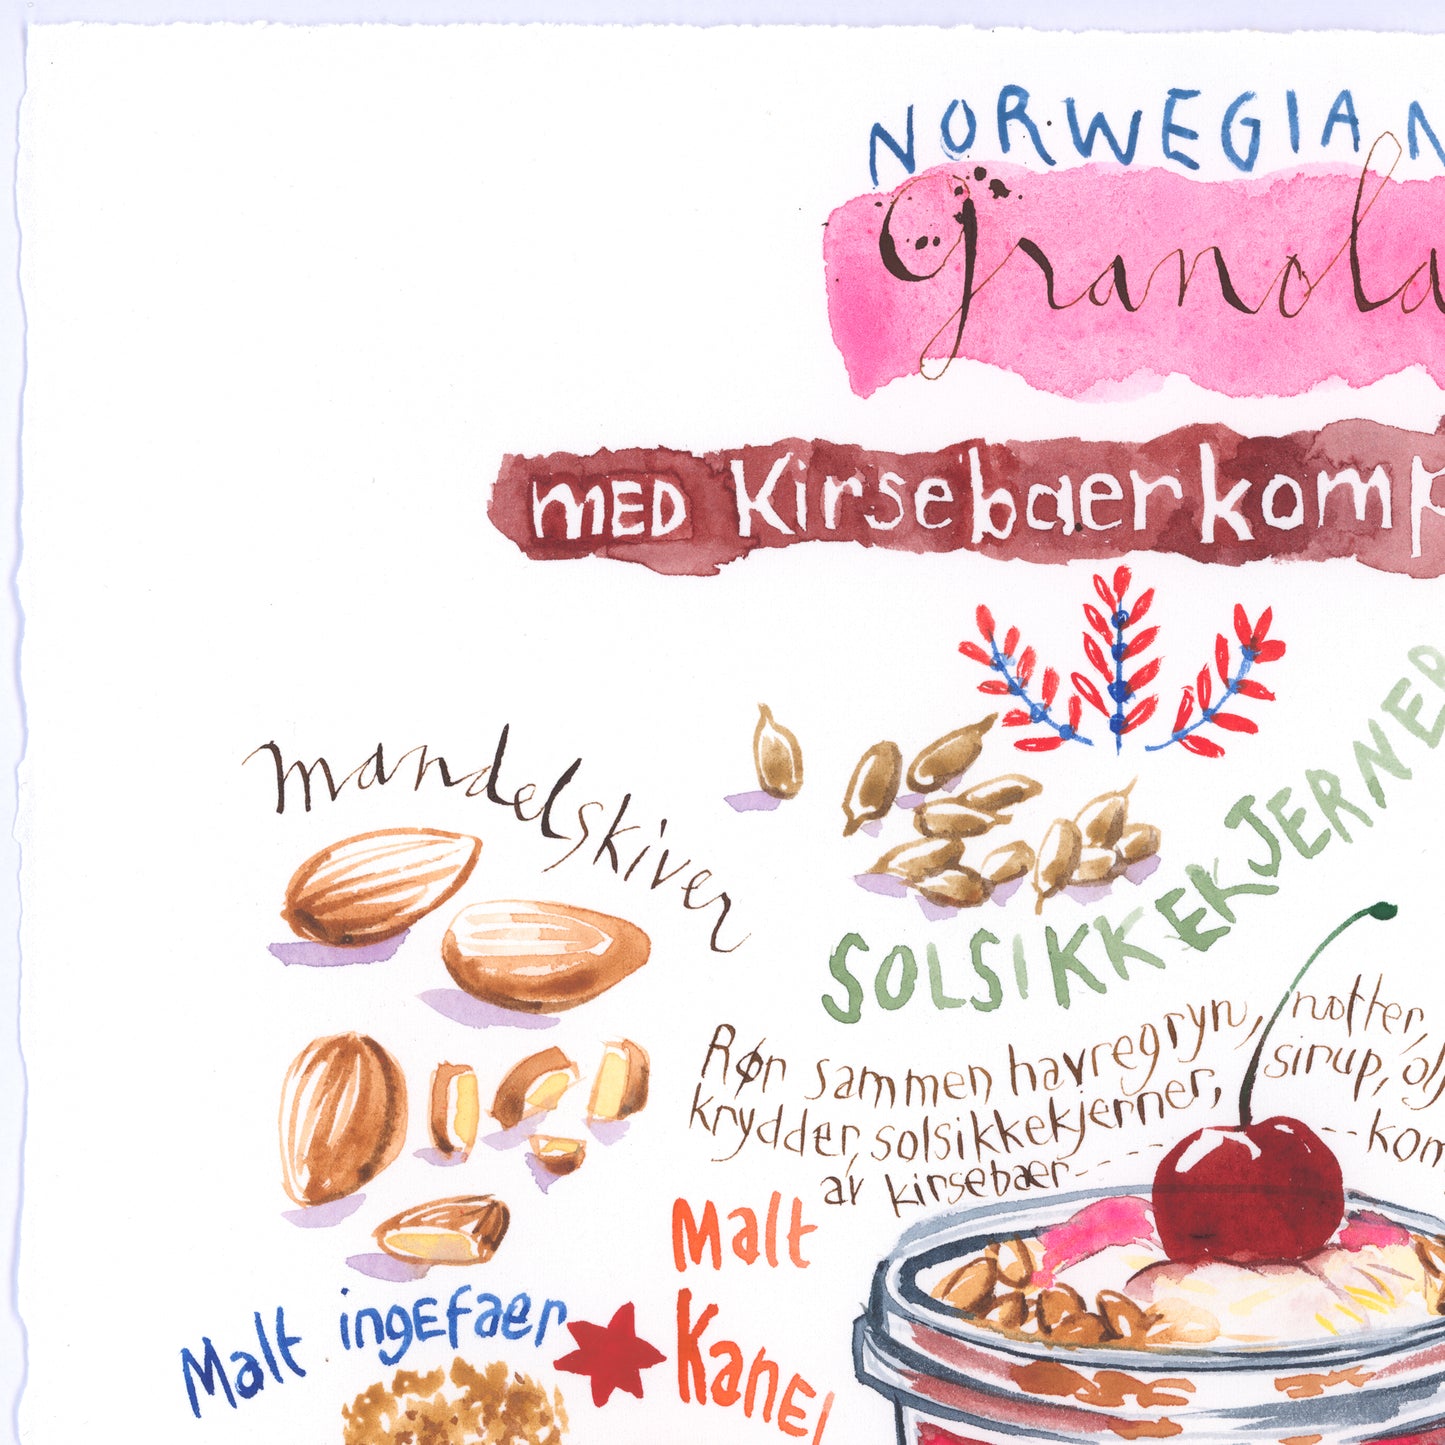 Norwegian Granola recipe. Original watercolor painting